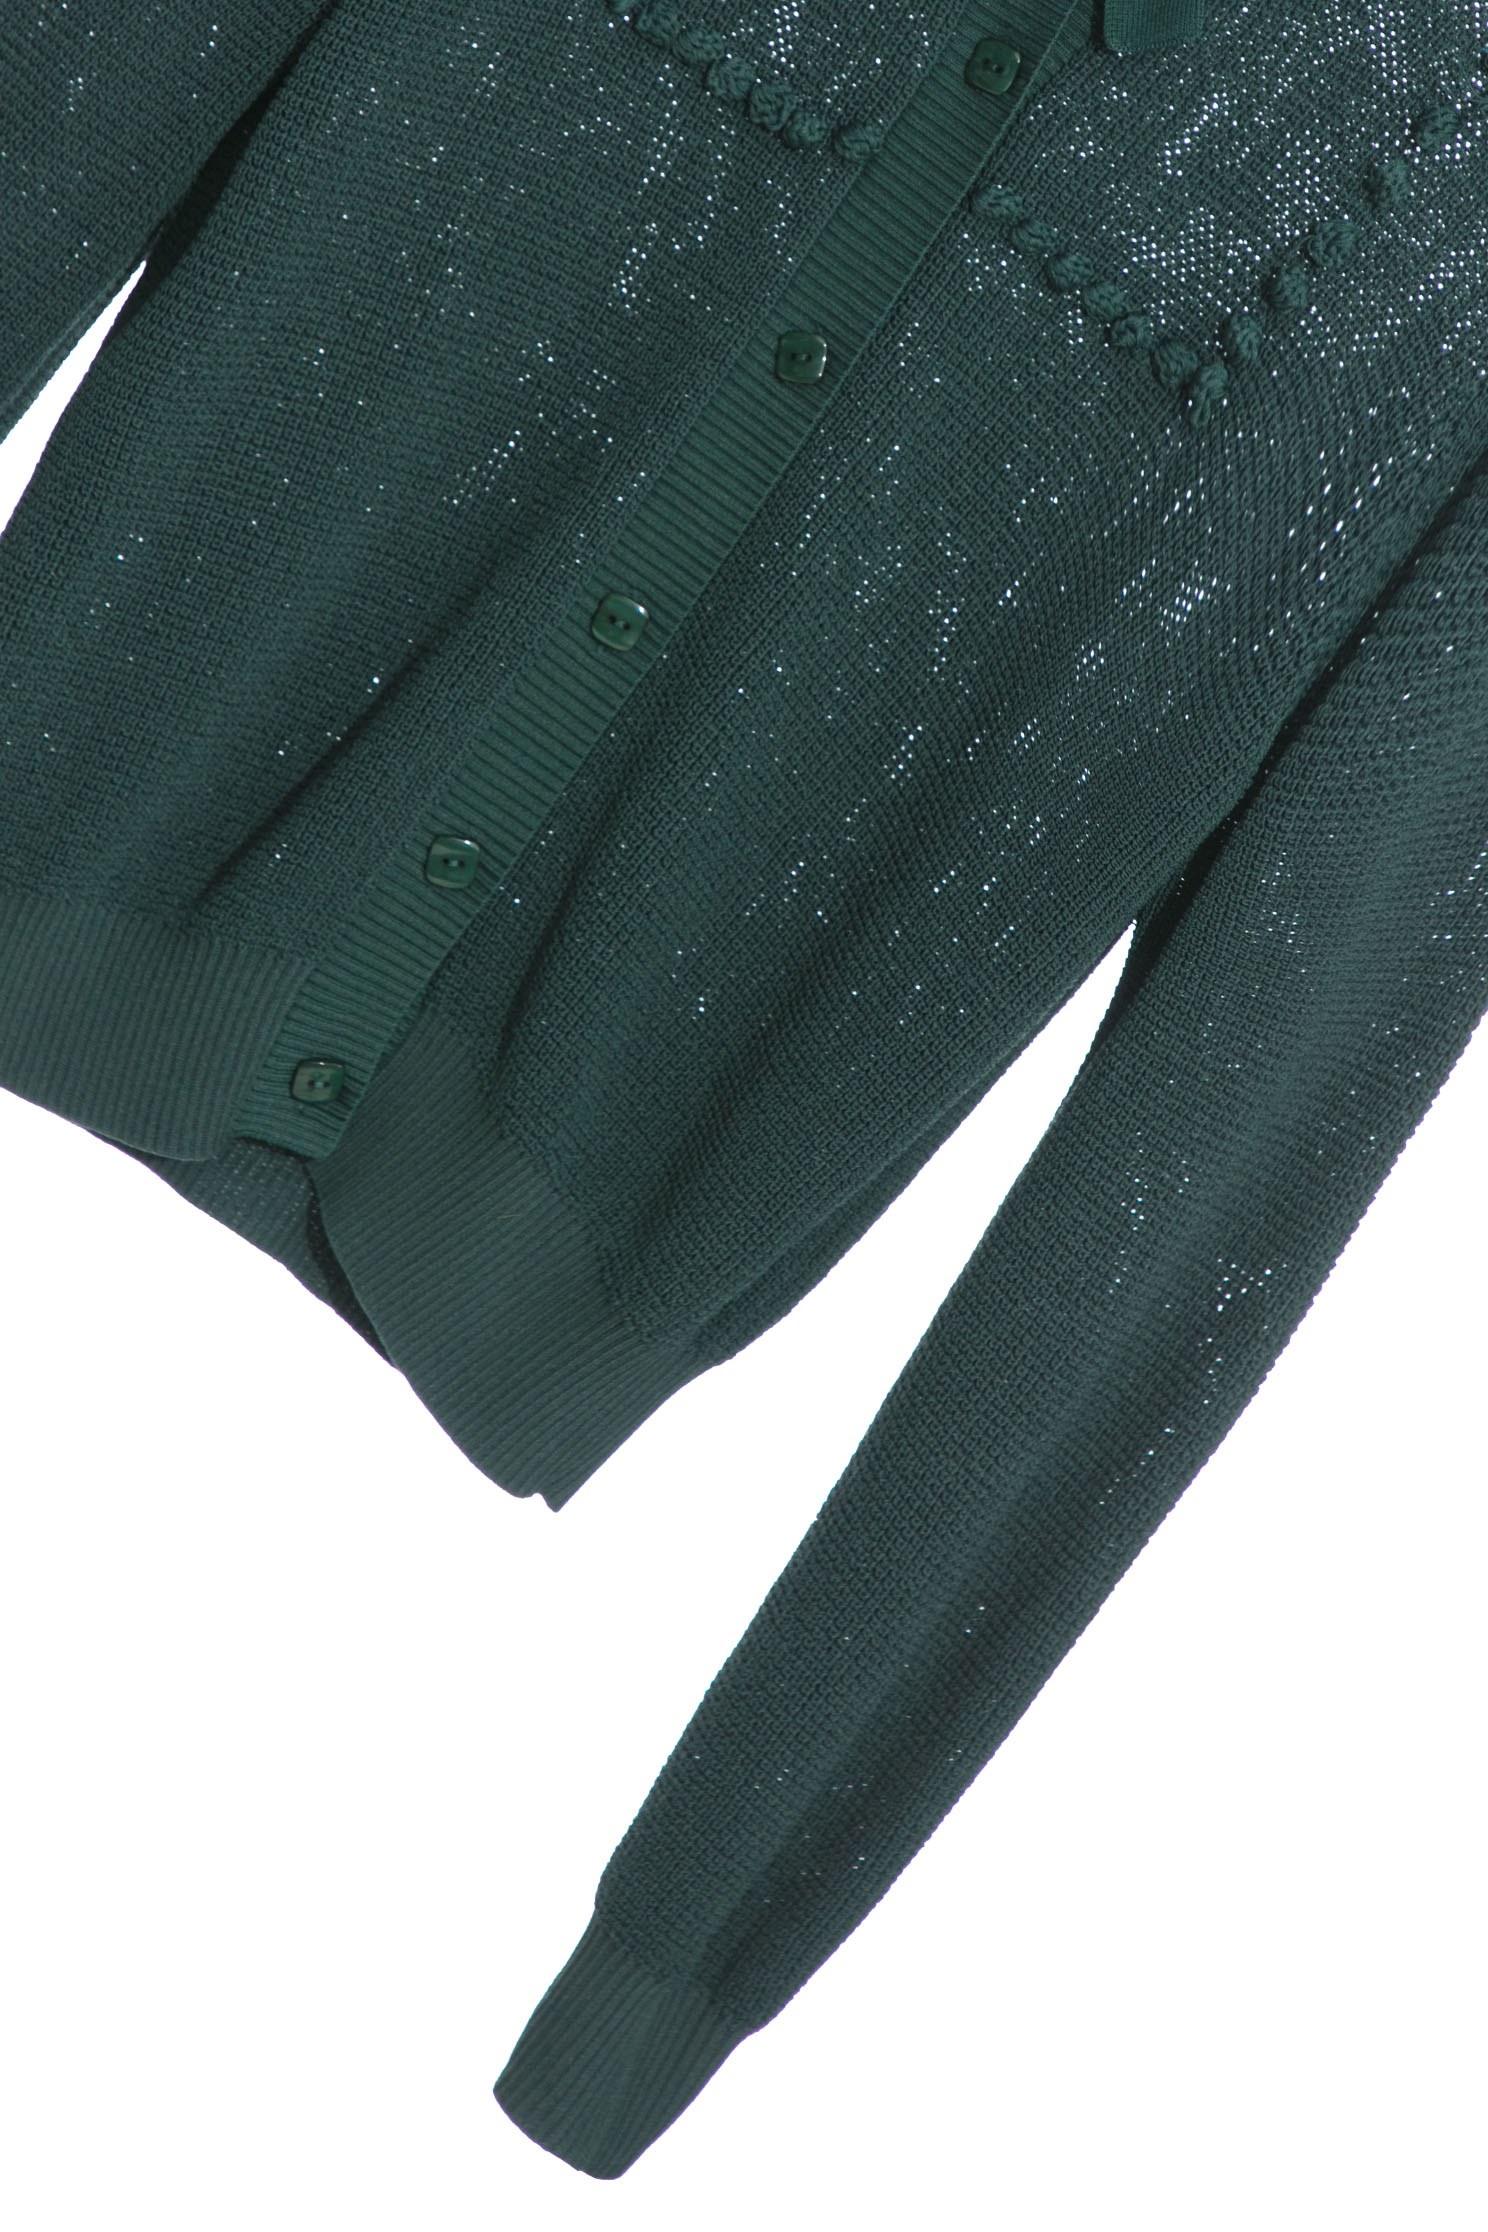 銅綠色針織外套銅綠色針織外套,保暖特輯,外套,春夏穿搭,純棉,蝴蝶結,針織,針織外套